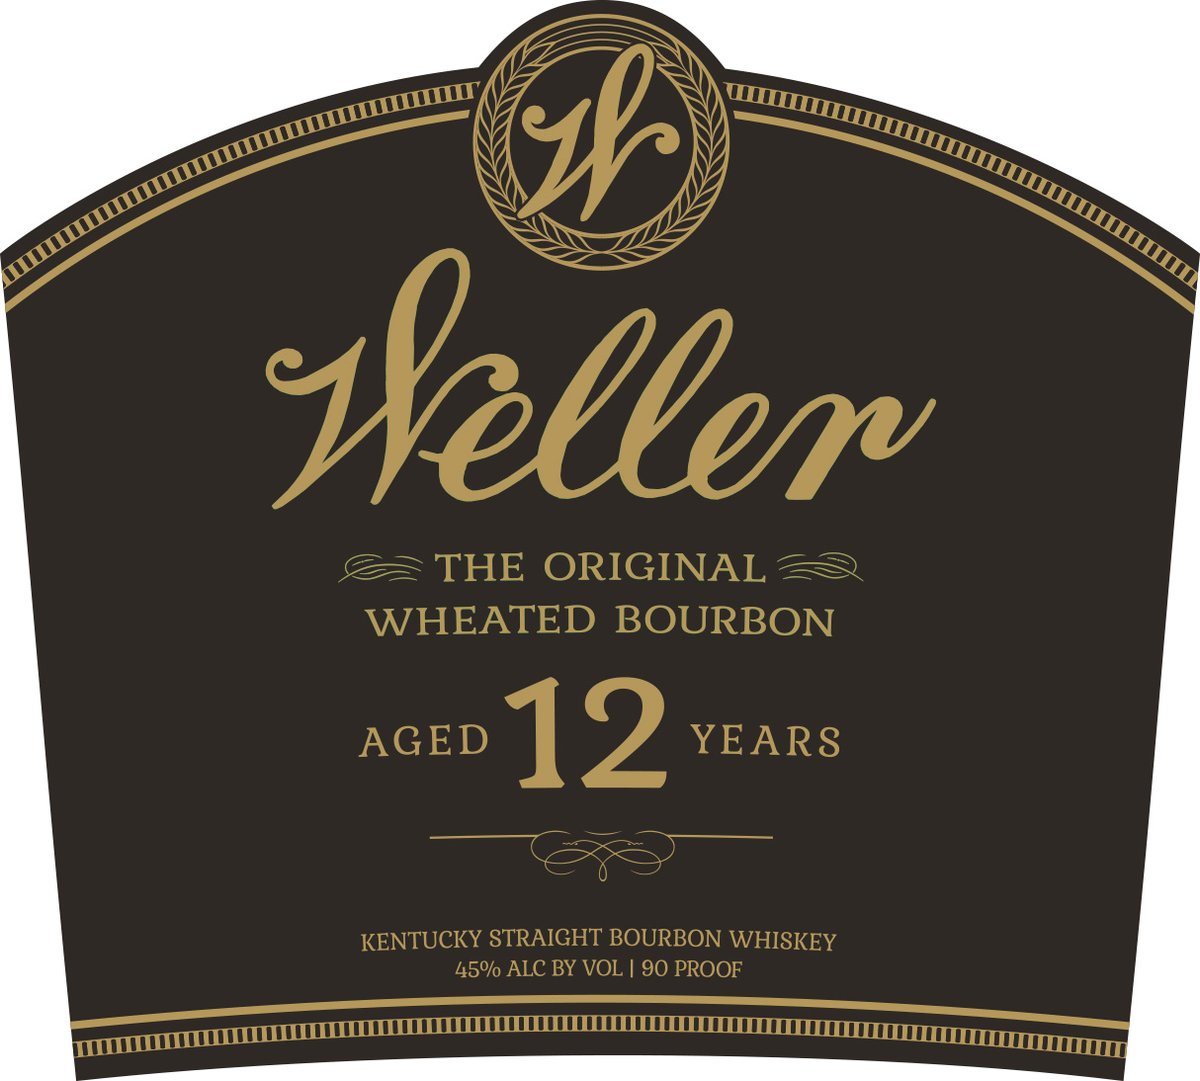 Weller Brand Gets Makeover Blog